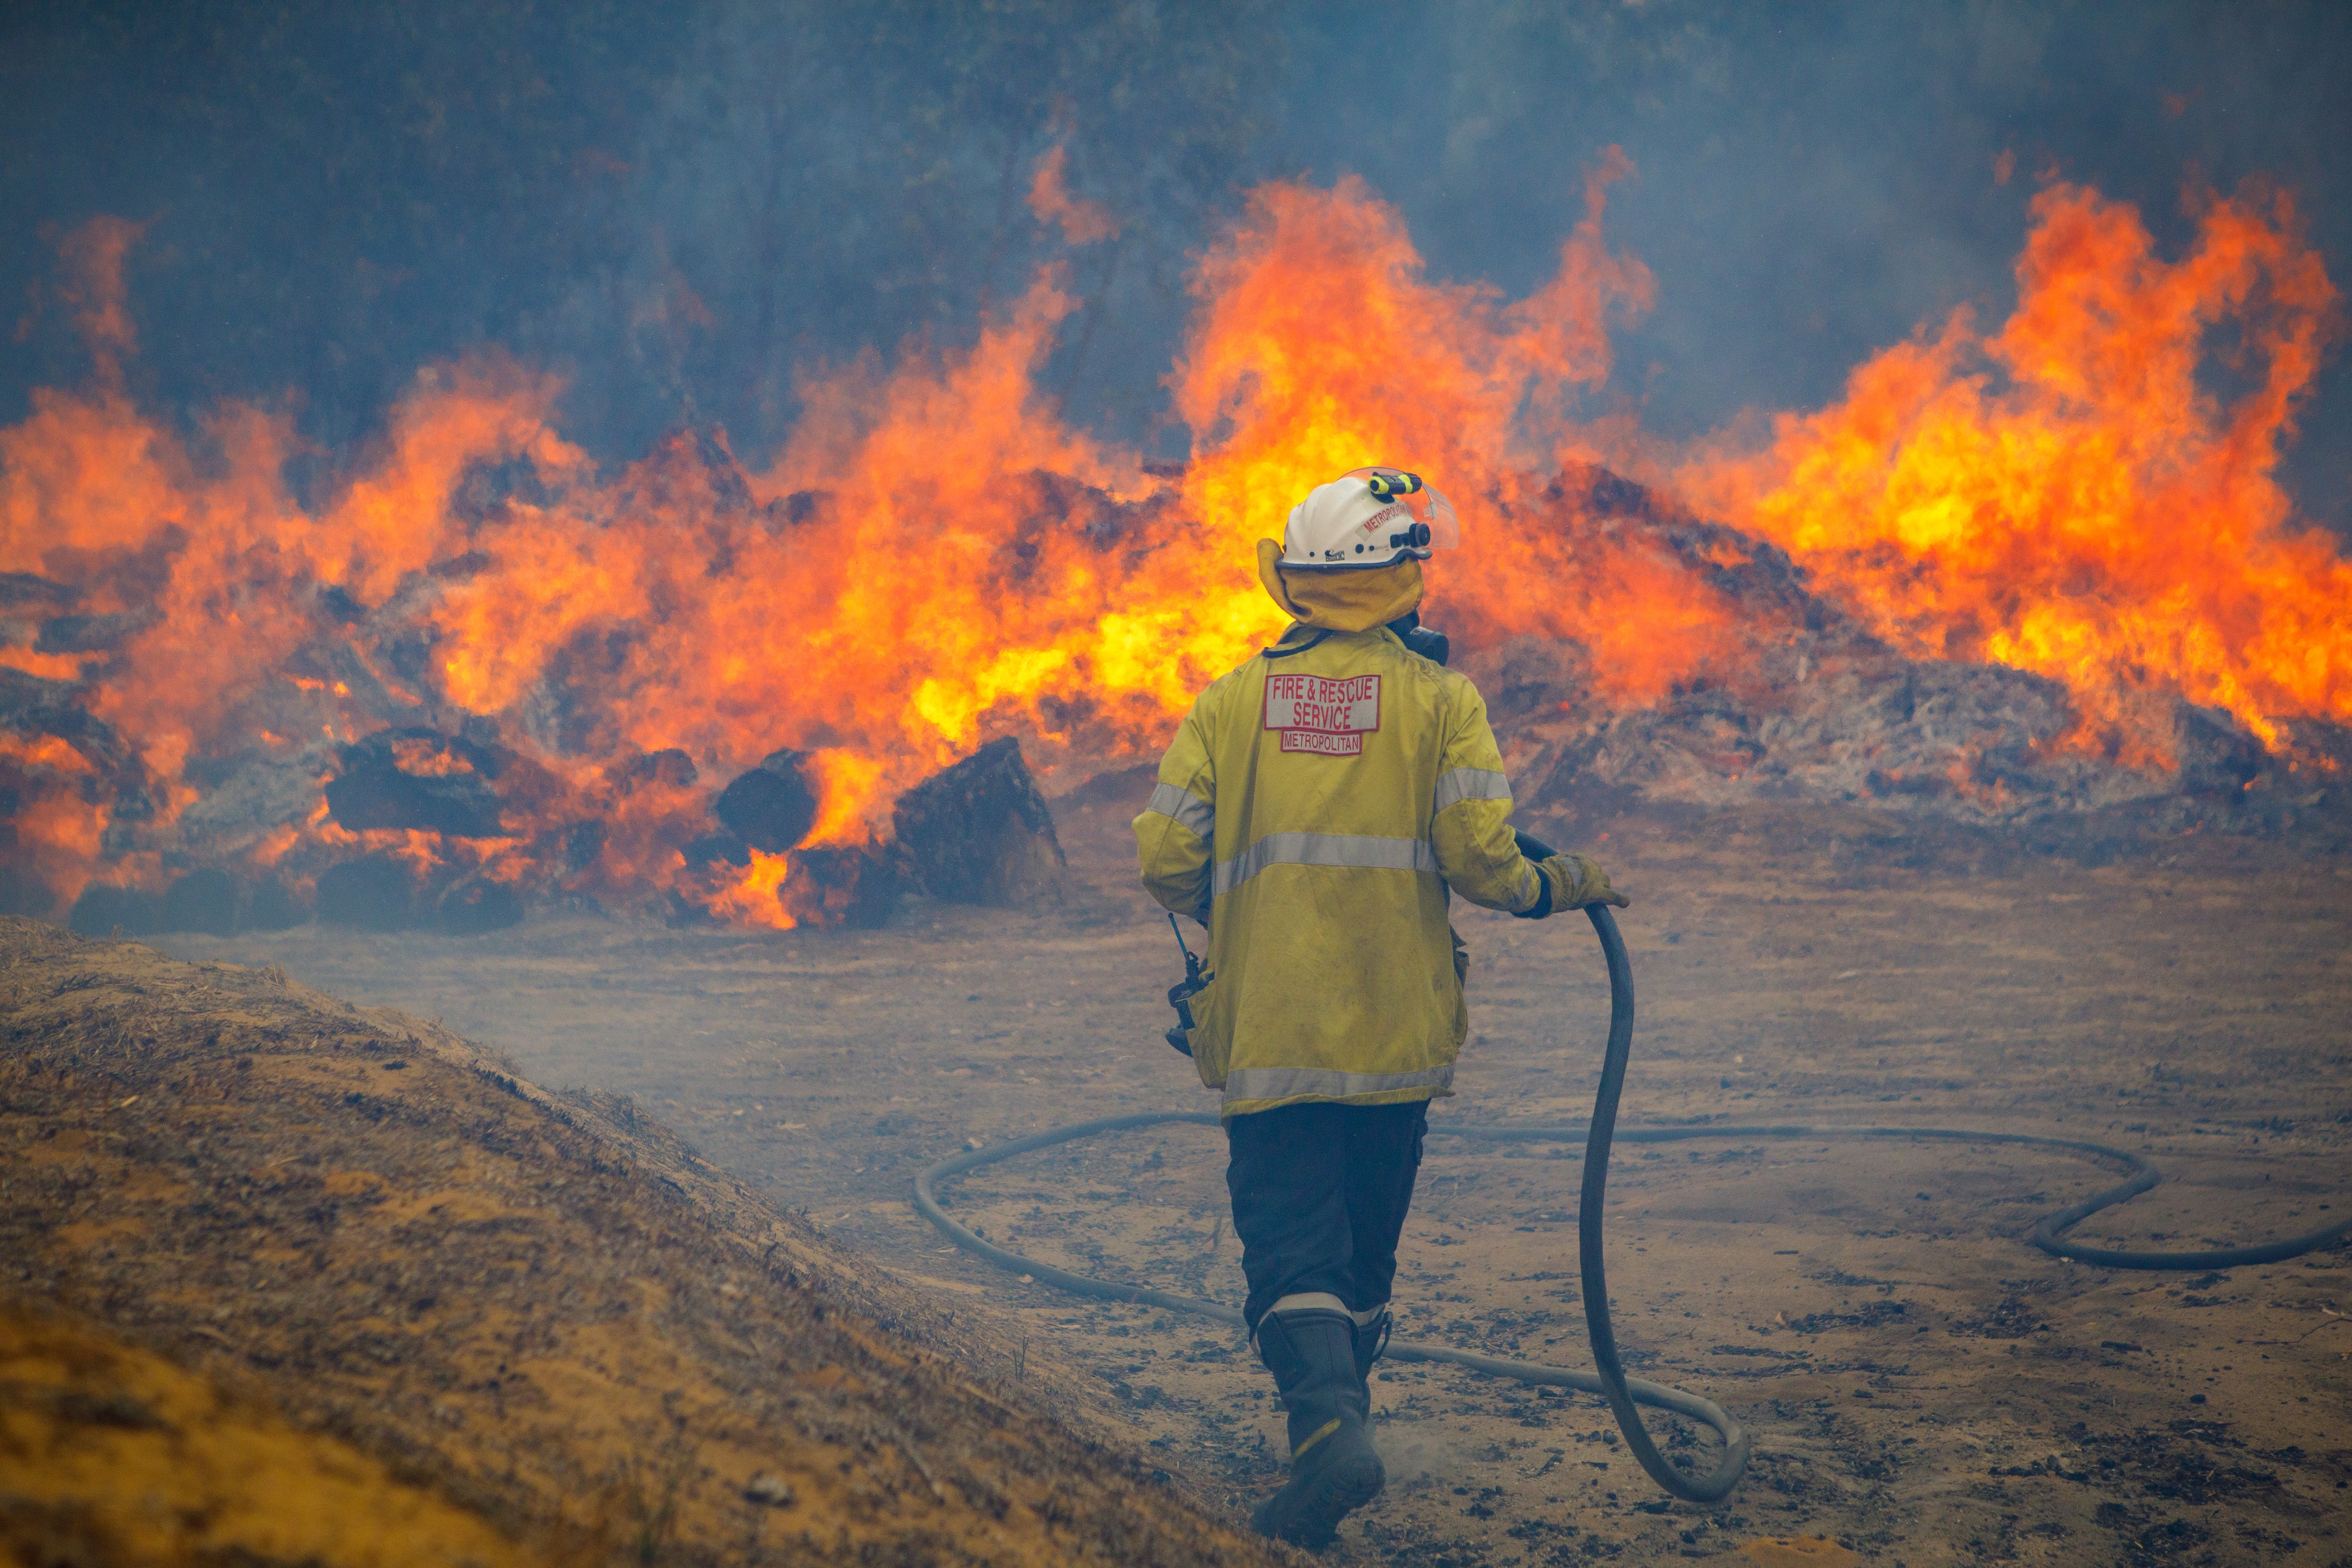 Fire crews battle a bushfire in Yanchep, Western Australia.